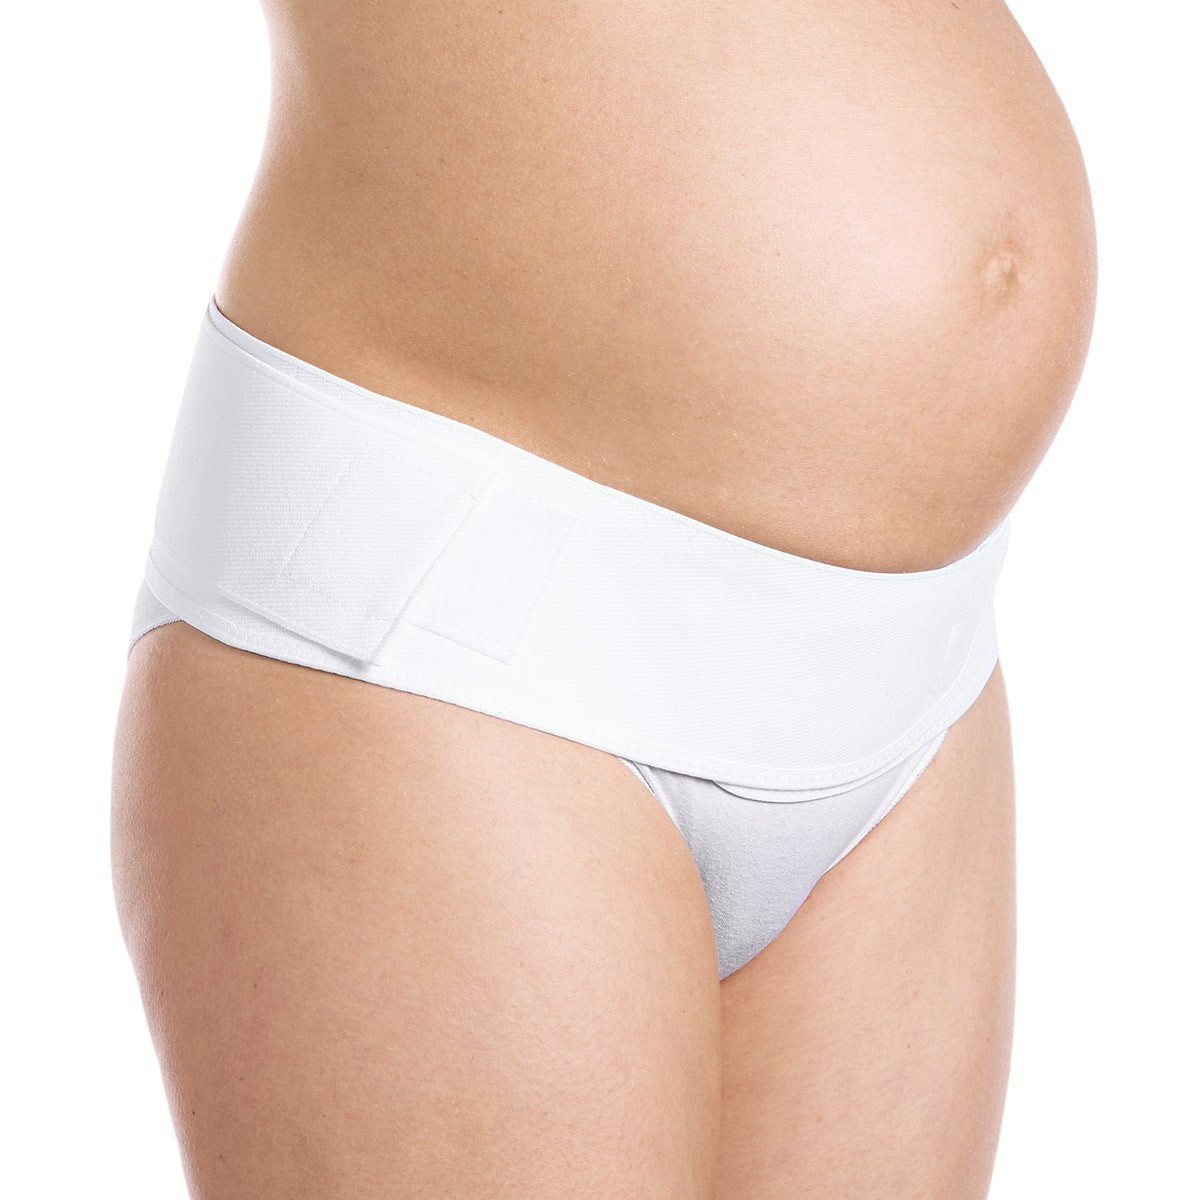 mutande contenitive per gravidanza